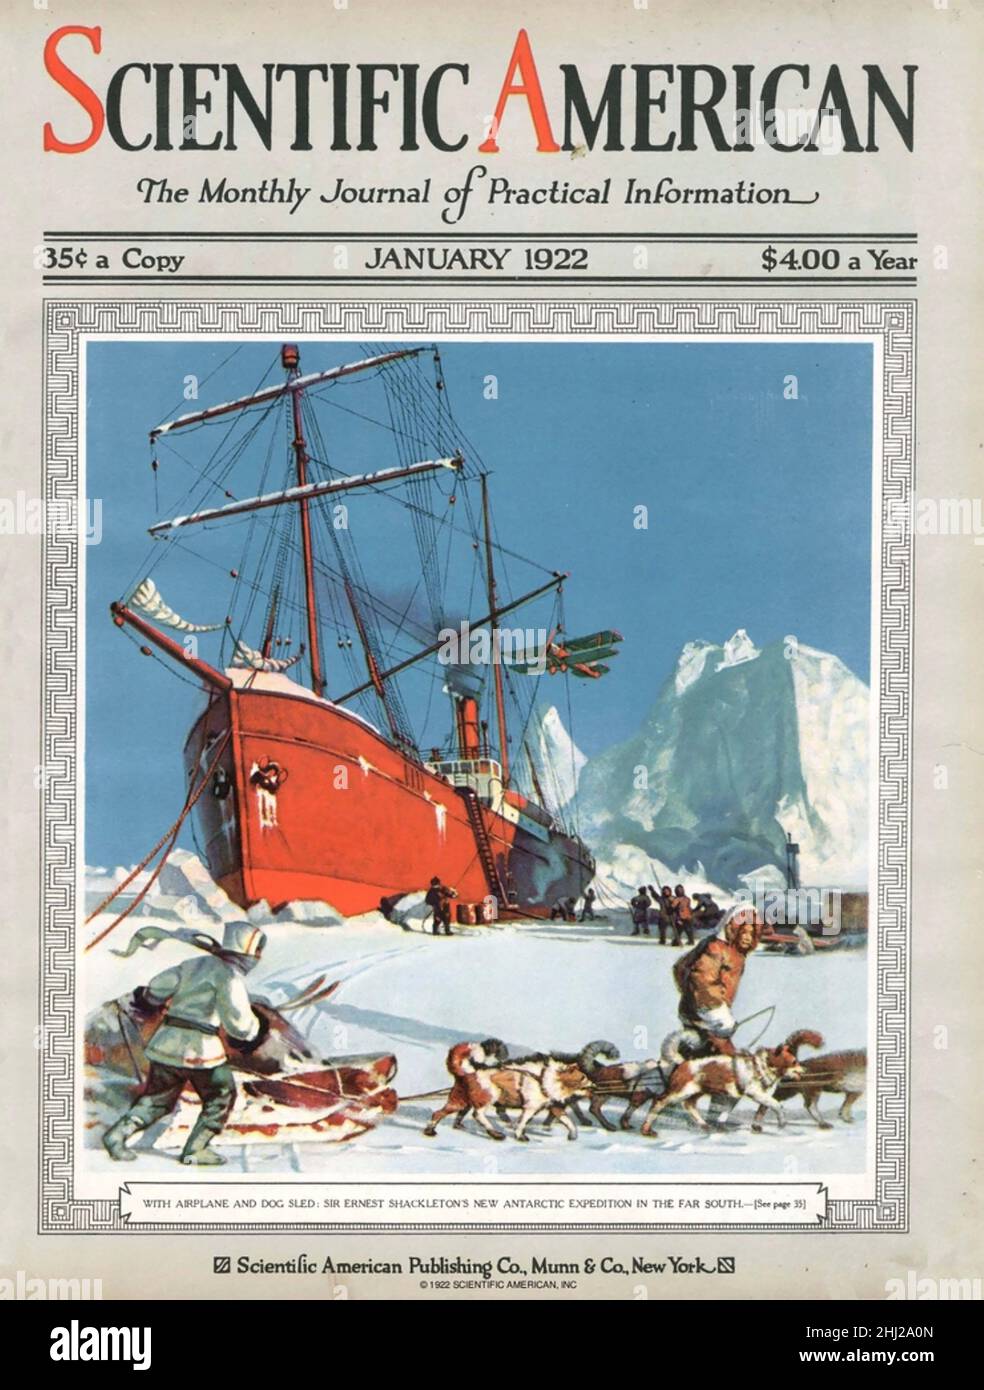 ERNEST SHACKLETON (1874-1922) explorateur antarctique anglo-irlandais.Son navire l'Endurance sur la couverture de janvier 1922 du magazine Scientific American. Banque D'Images